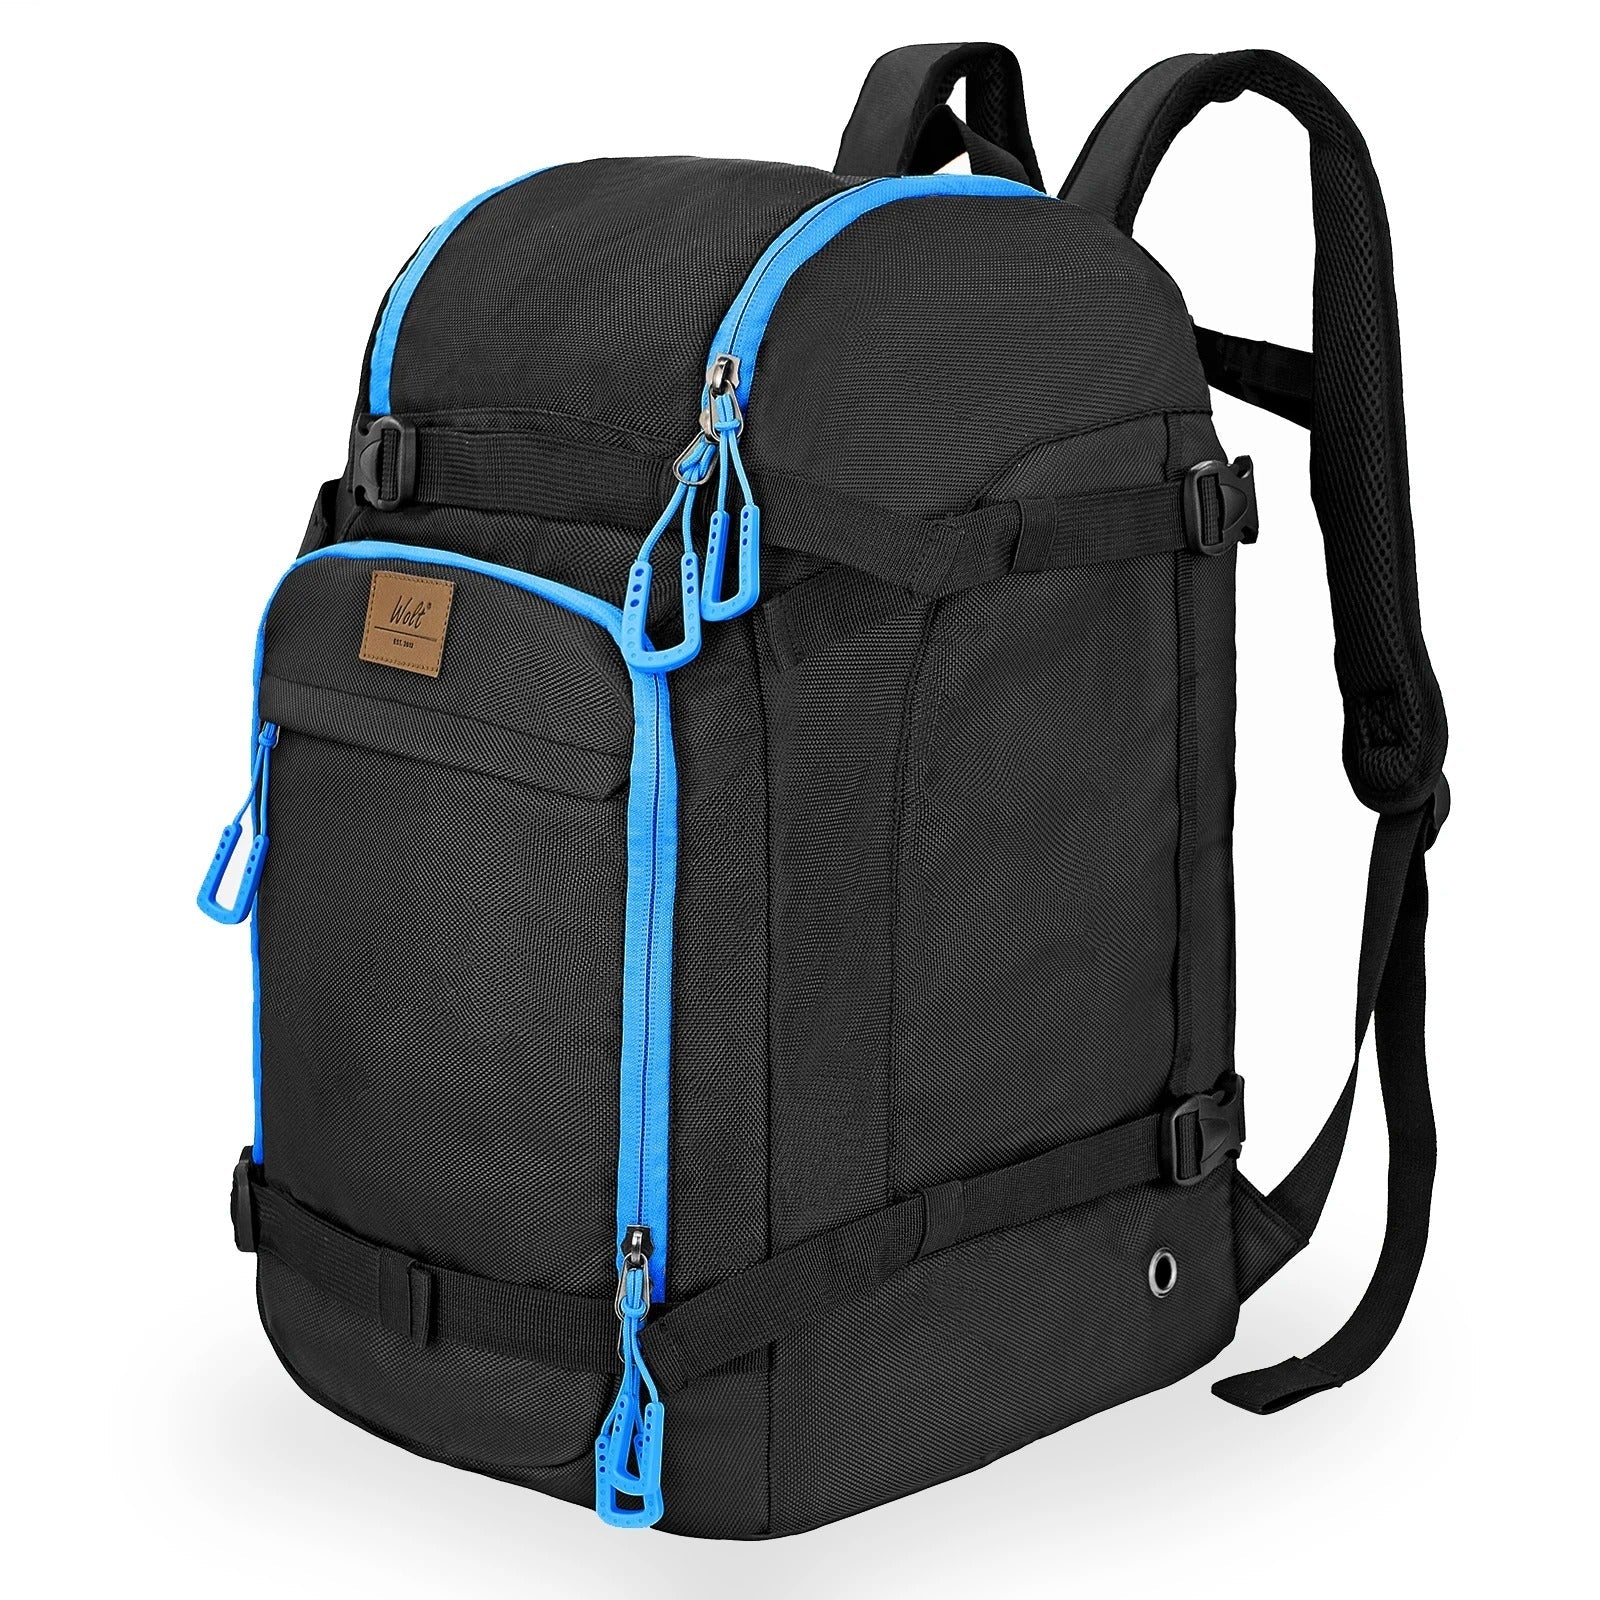 Ski Strap Backpack - Black and Blue